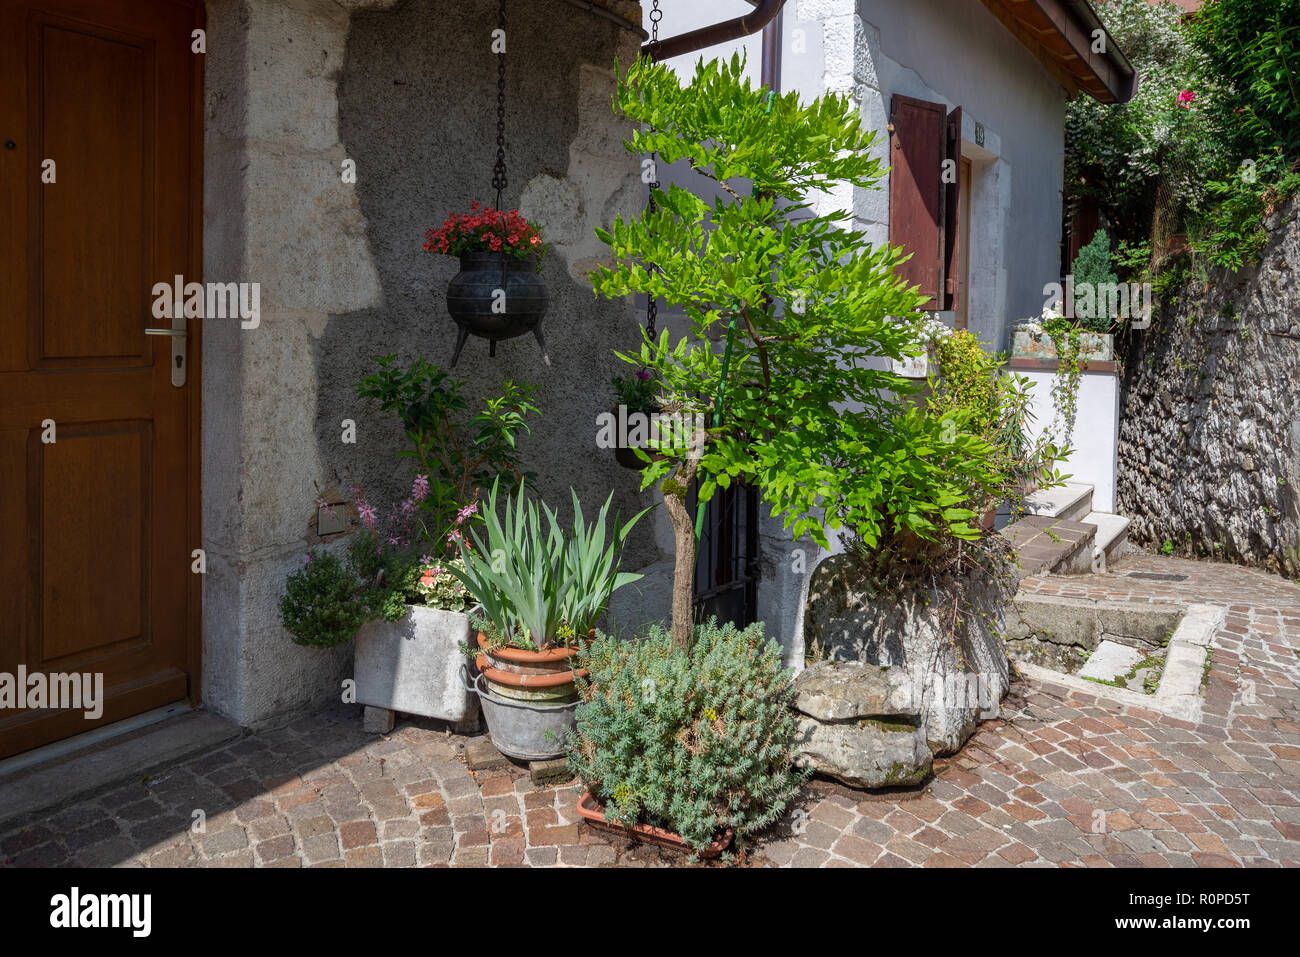 Entrée d'une maison en pierre décorée avec des jardinières et des seaux en fer suspendu un très beau front de rue à Annecy, France Banque D'Images